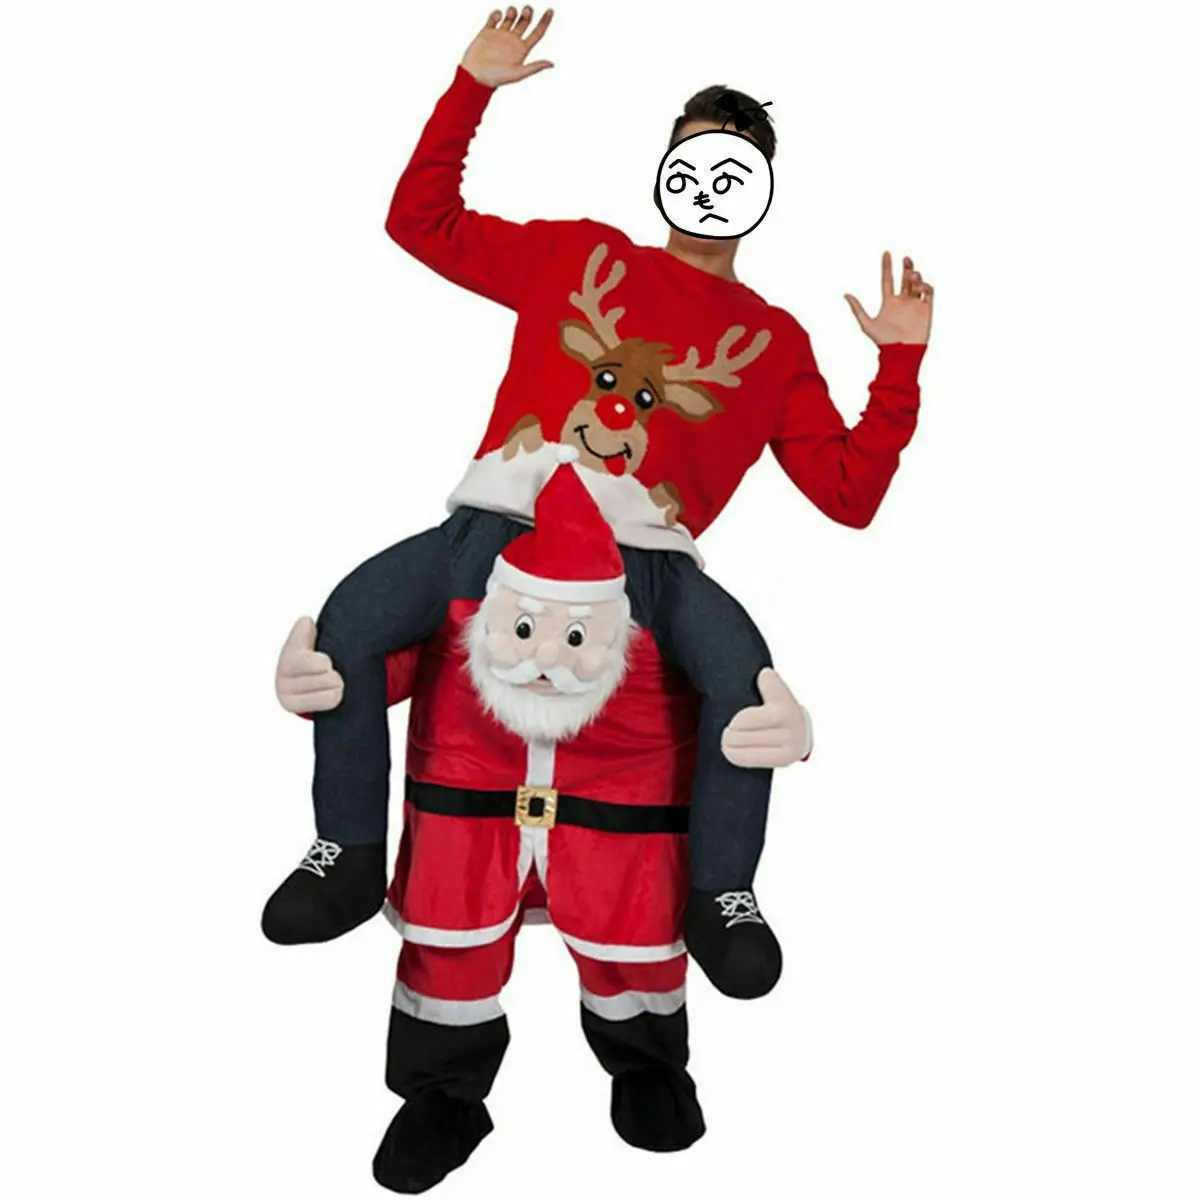 Carry Me Ride on Snowman Dwarf маскарадный костюм, вечерние костюмы для костюмированной игры, одежда для рекламы, карнавал, Рождество, фестиваль, для взрослых - Цвет: Santa Claus